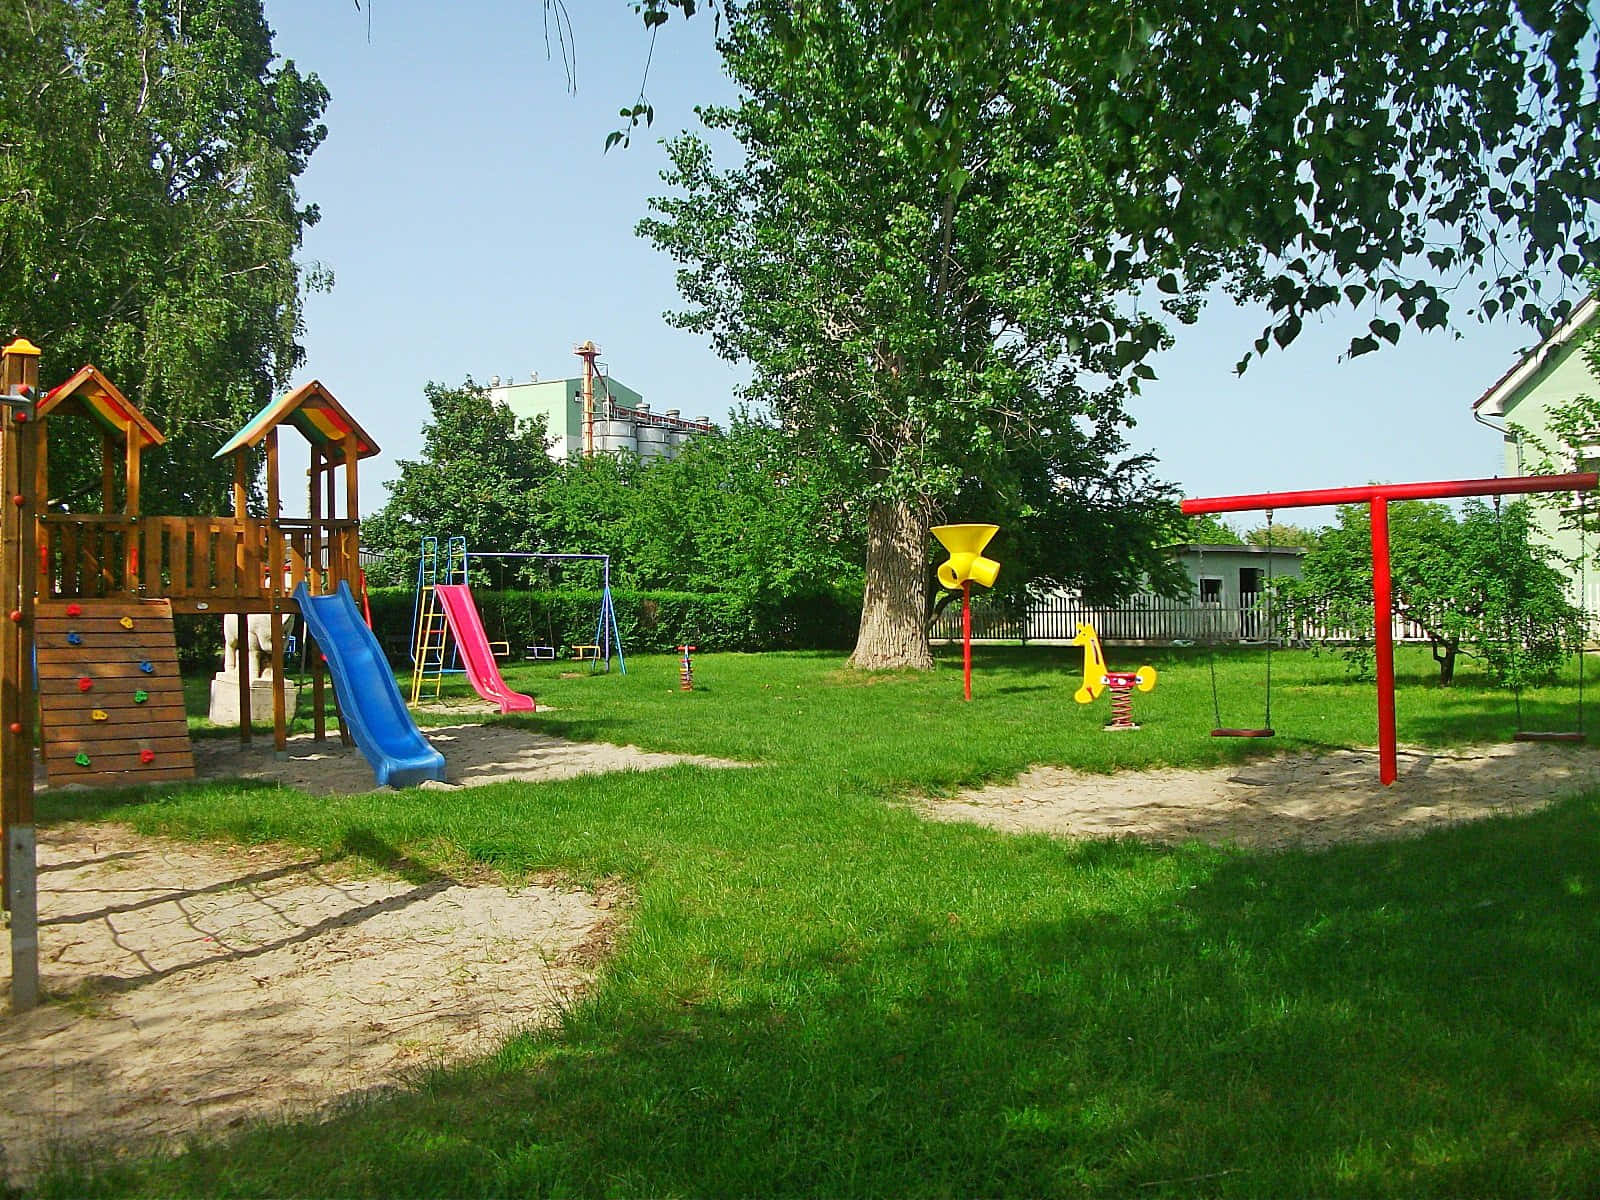 Emocionanteparque Infantil En Un Tranquilo Parque